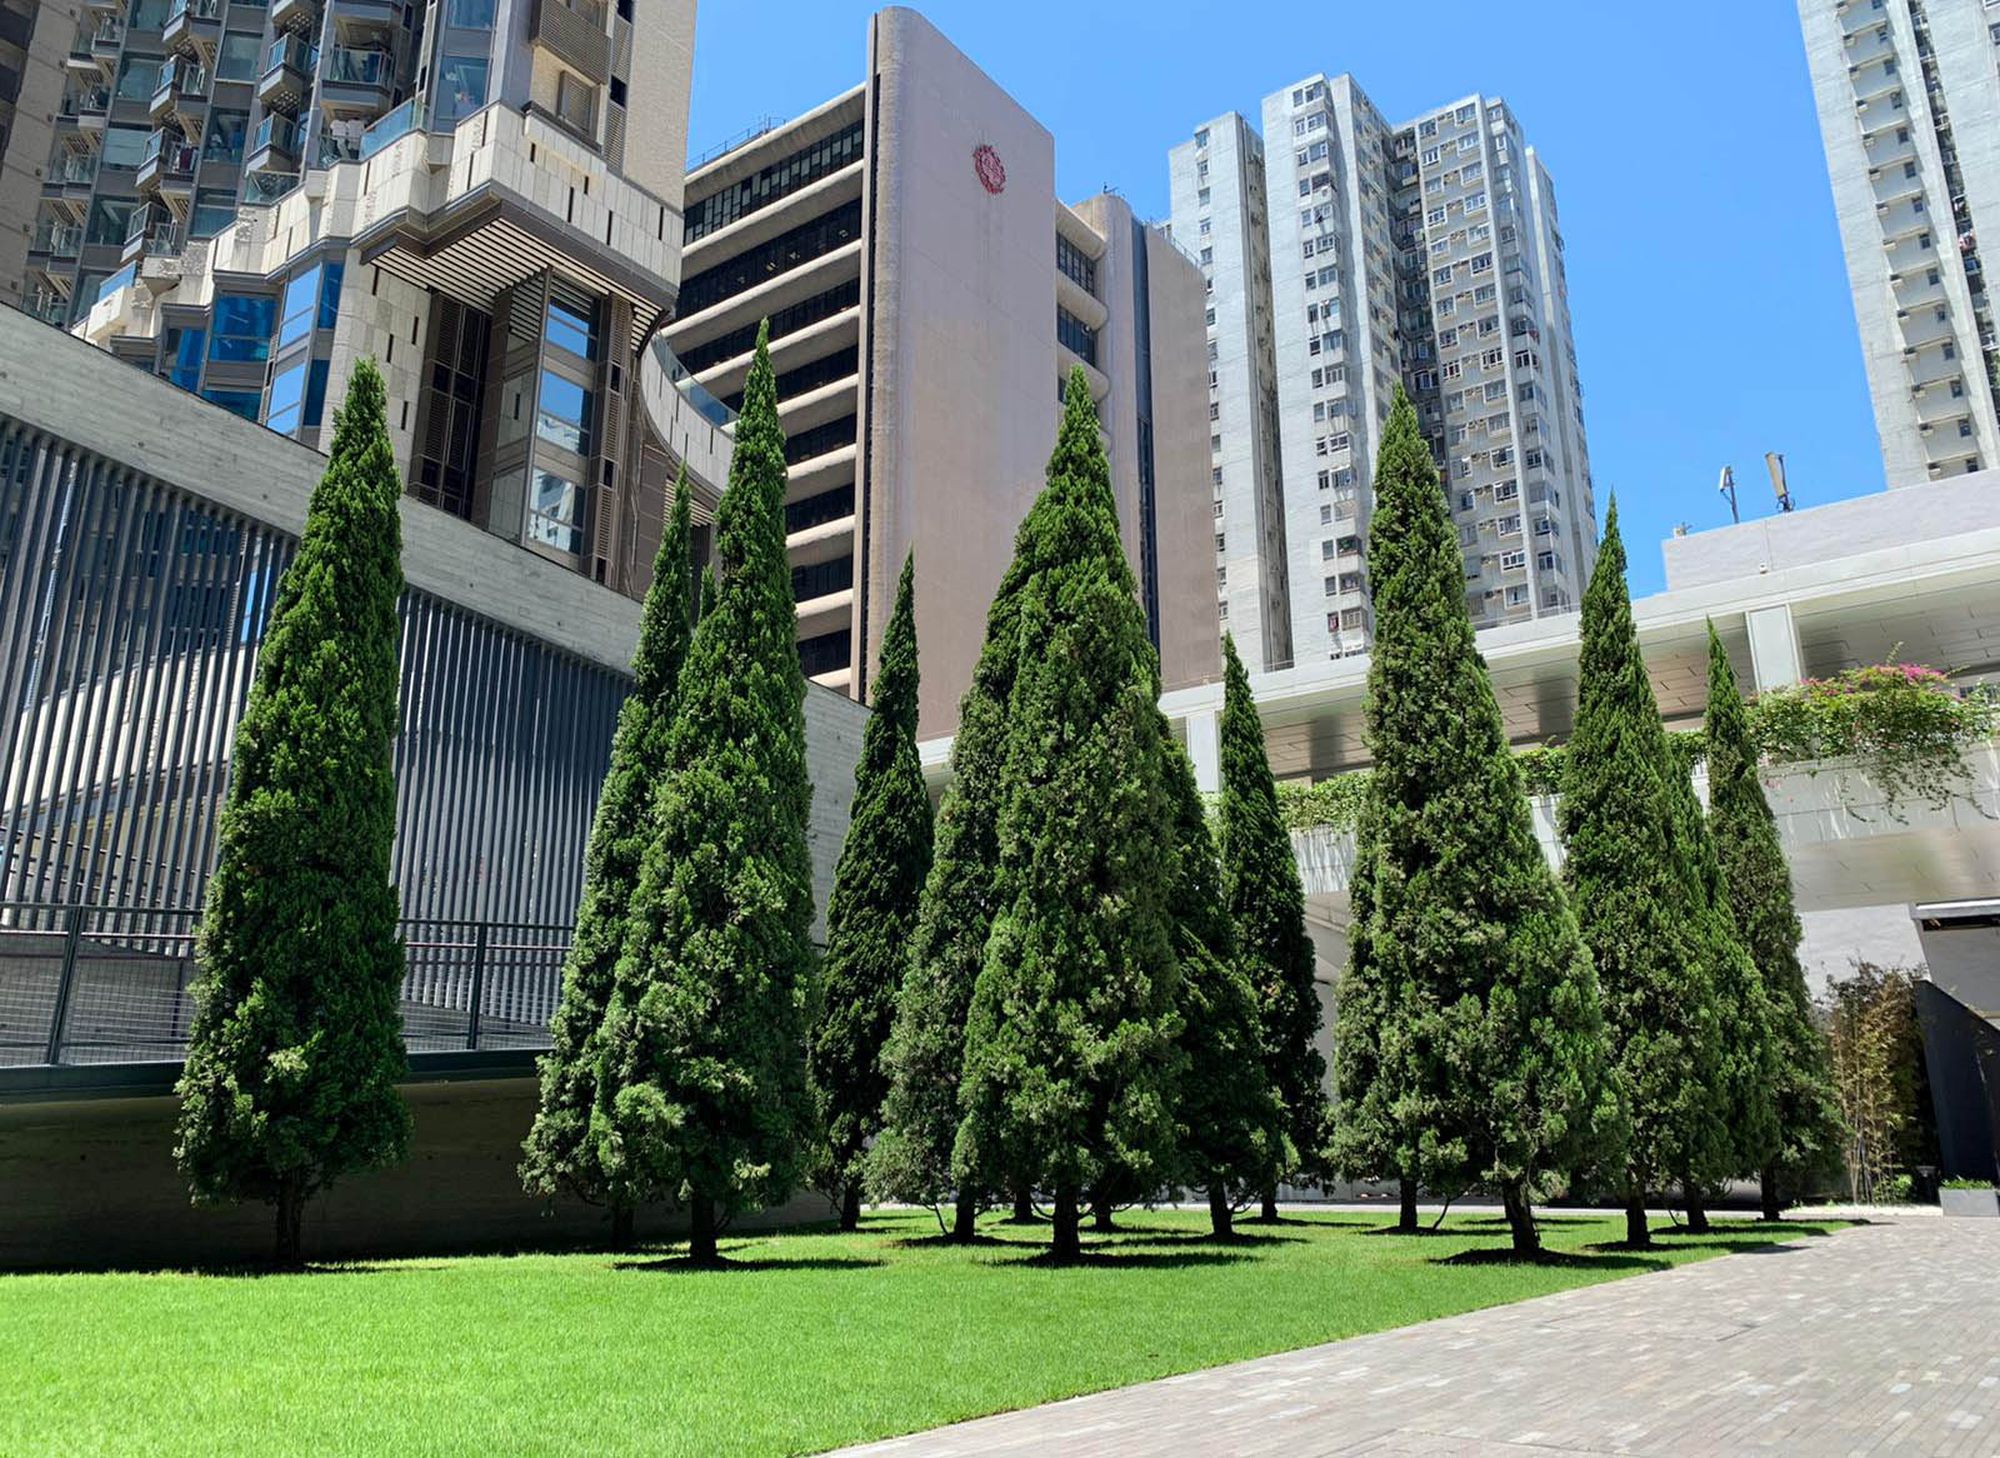 「油街實現」為全新藝術空間開幕推出了10個藝術項目，當中兩個特別為慶祝香港特區成立25周年而設，包括圖中以樹為主題的動力裝置—「賞森．悅木」。